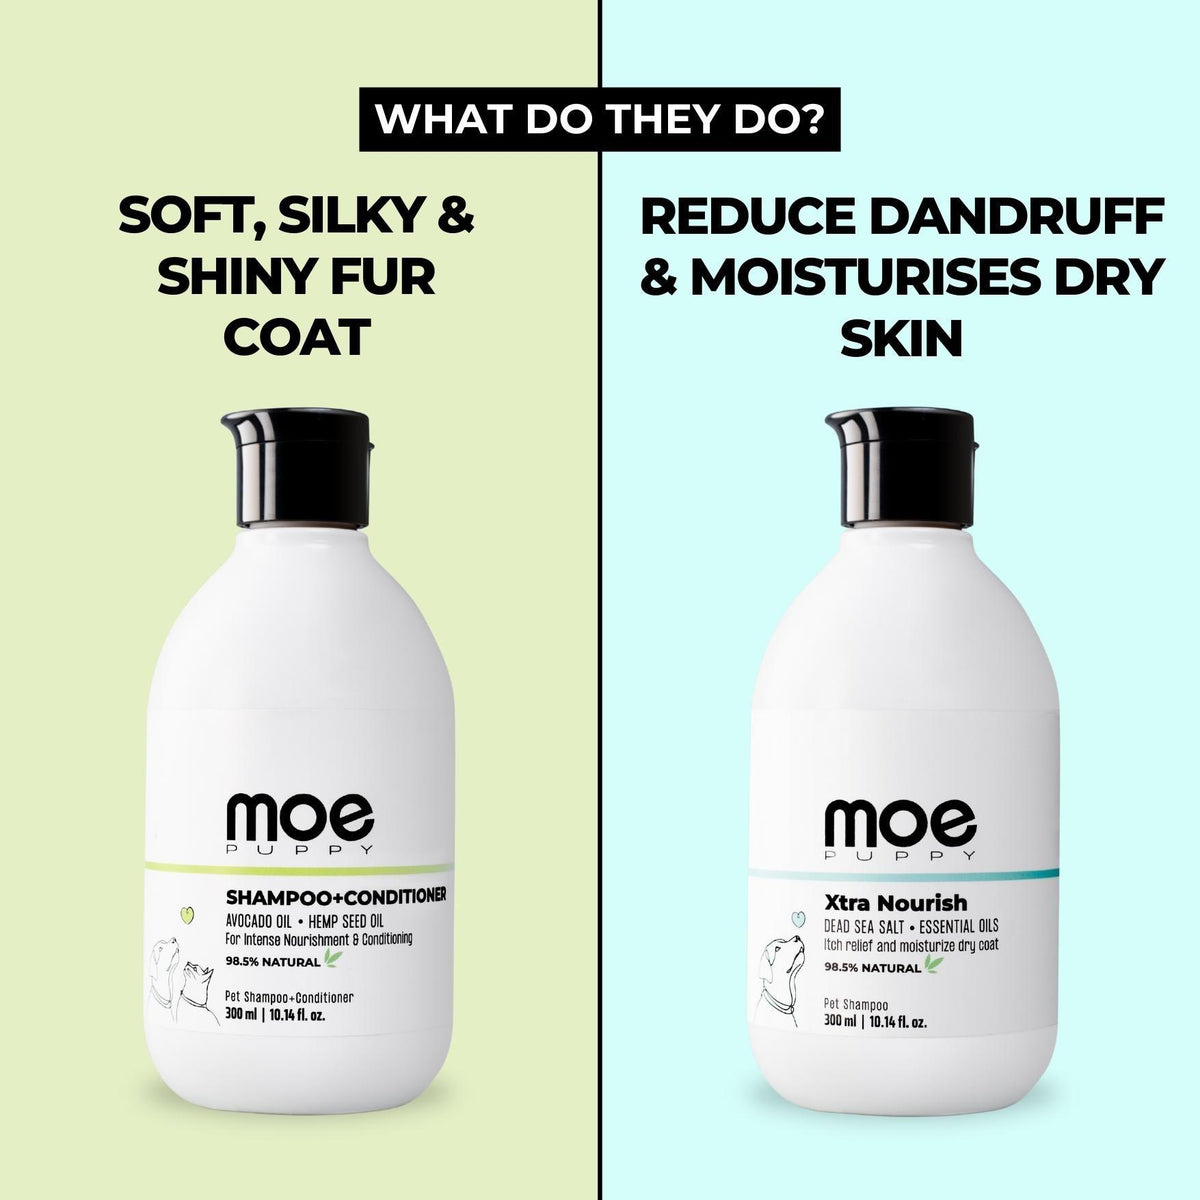 Shampoo+Conditioner & Xtra Nourish Pet Shampoo Combo